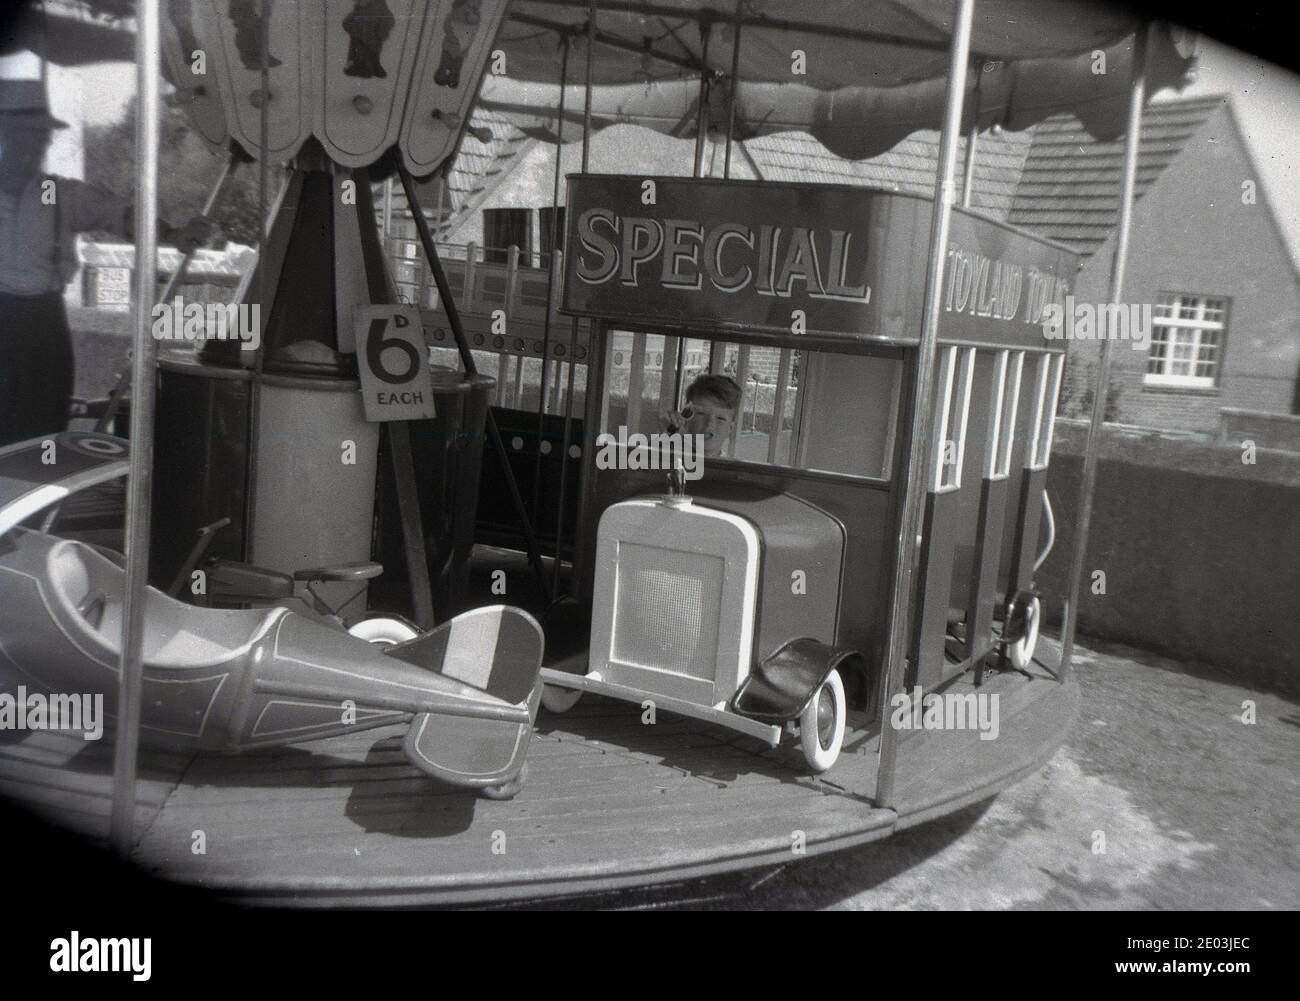 Années 1960, historique, un jeune garçon assis dans un «bus» sur un petit tour de foire, faisant semblant au chauffeur de bus, Angleterre, Royaume-Uni. Un panneau dit que le trajet coûte '6d chacun' (6 pence dans la vieille monnaie, pré-décimalisaton, ) Banque D'Images